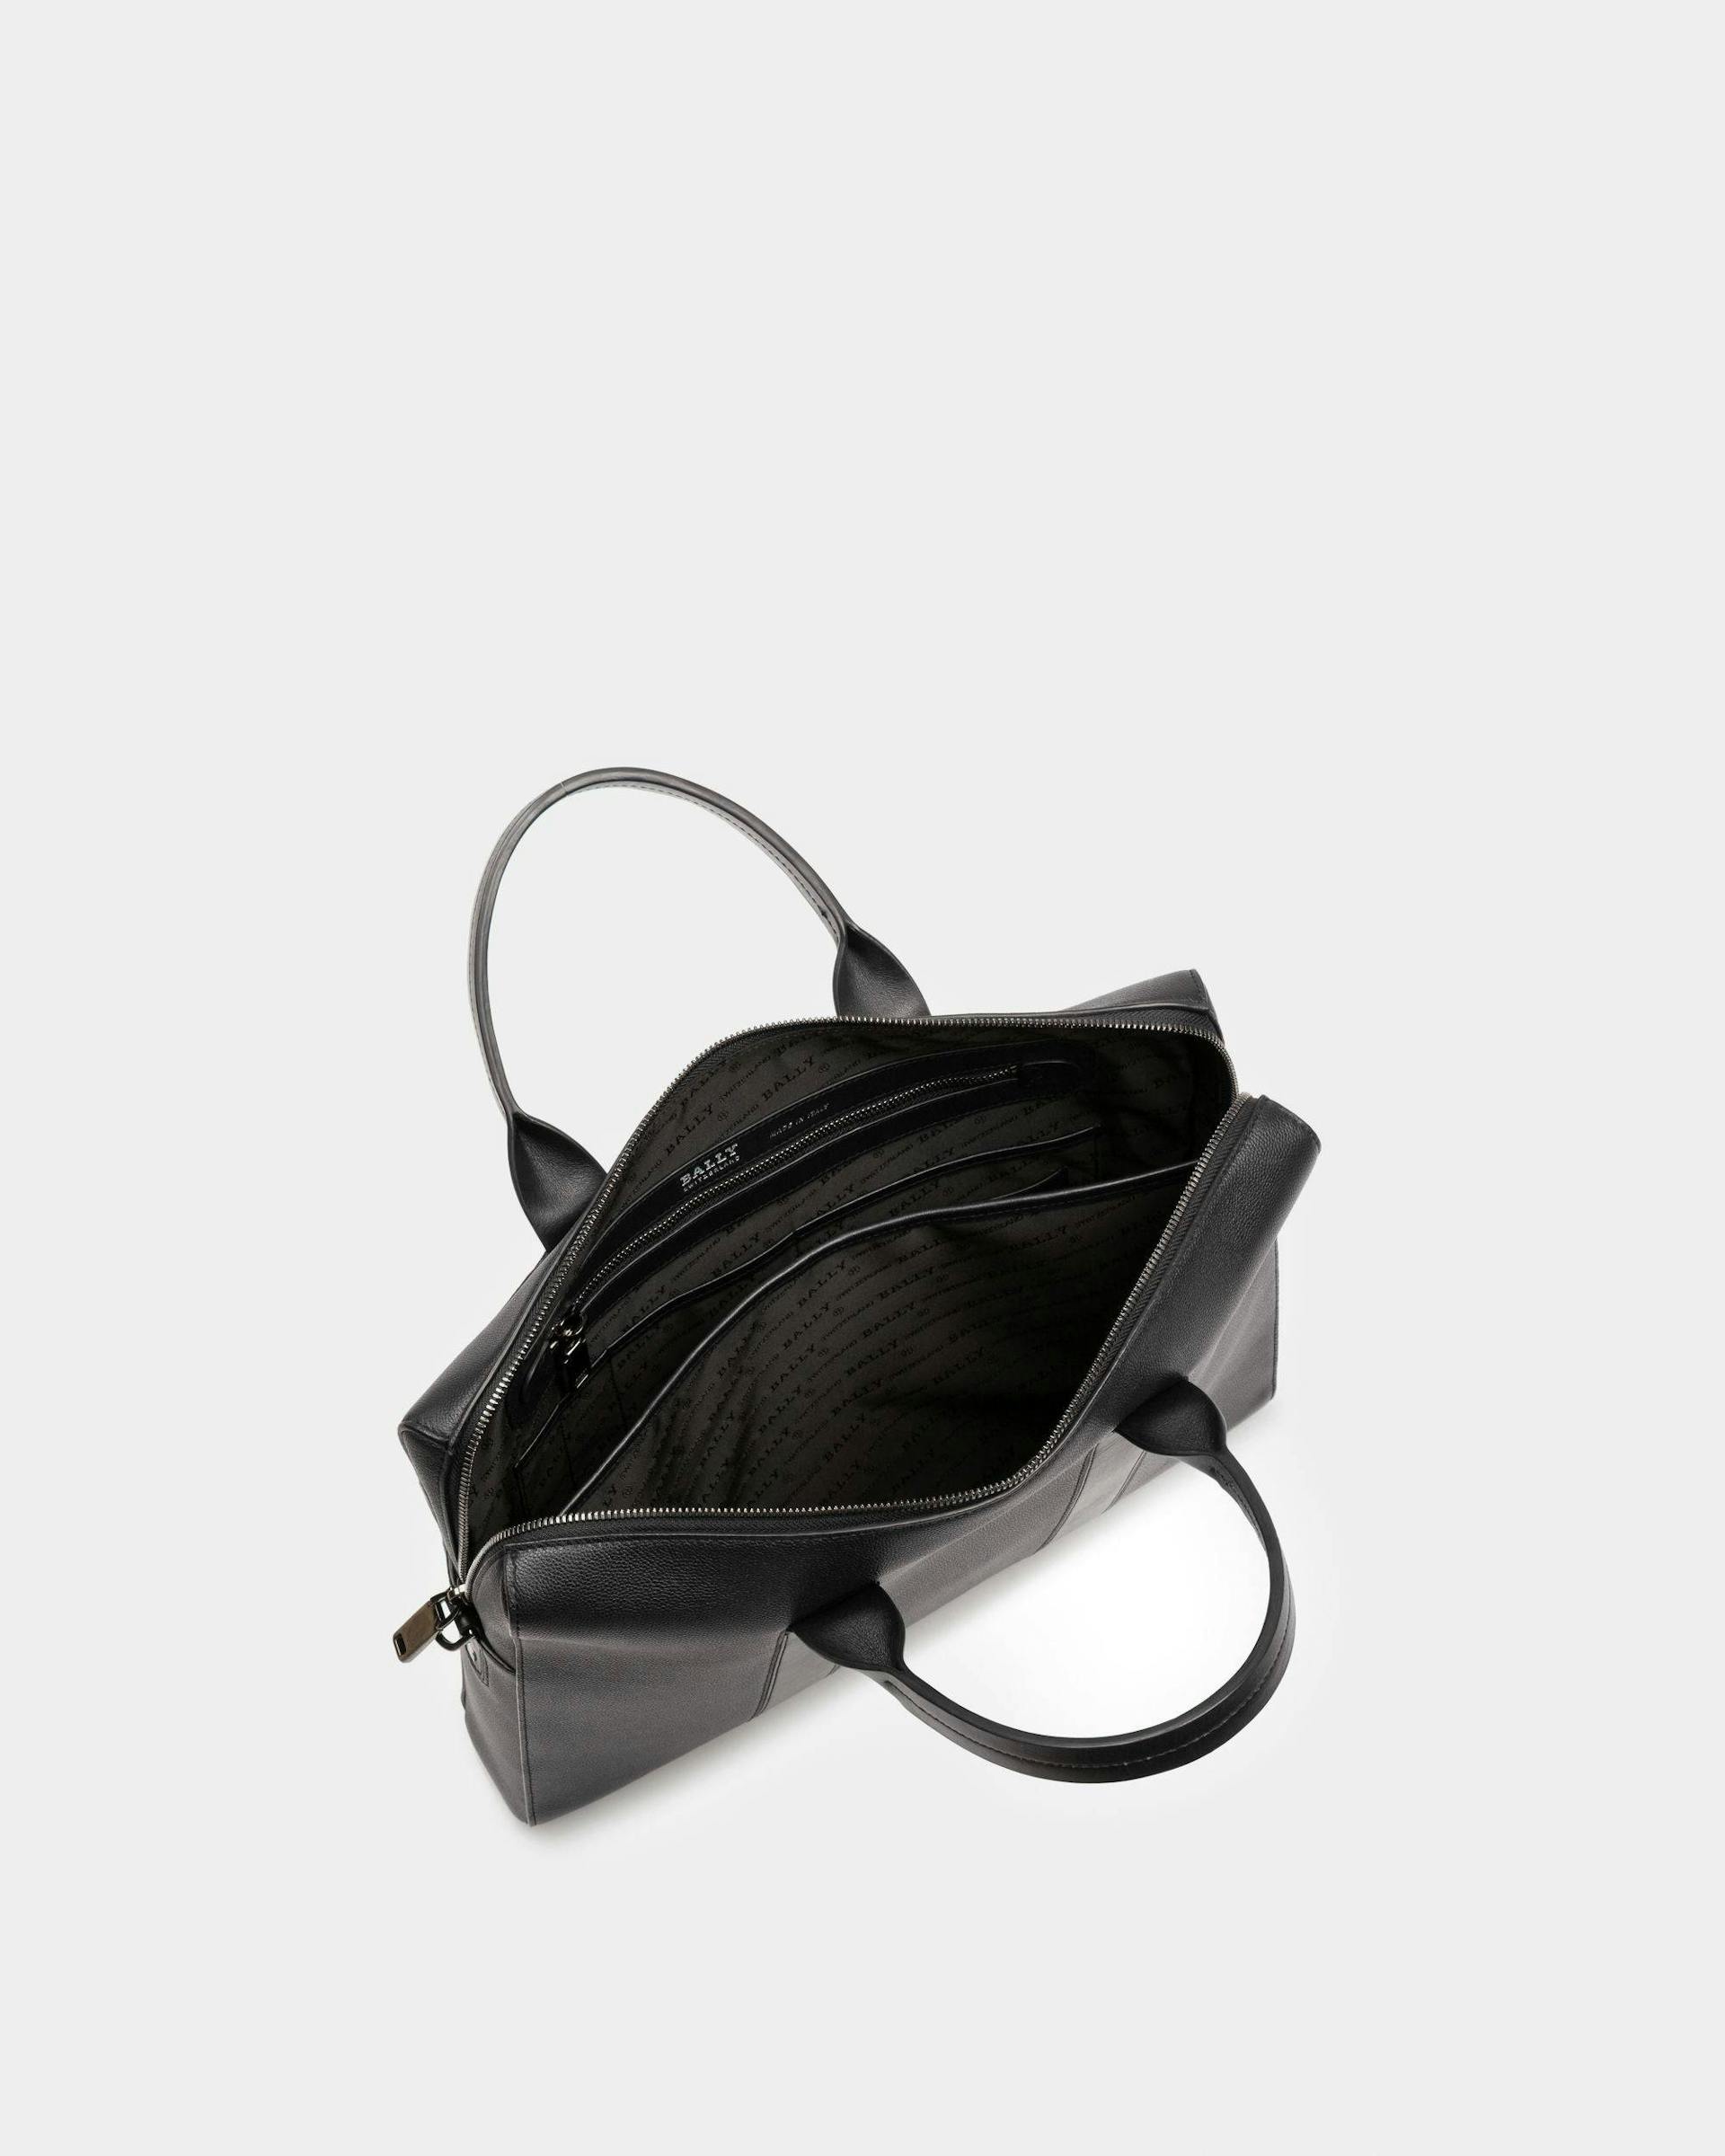 Elter Leather Business Bag In Black - Men's - Bally - 03